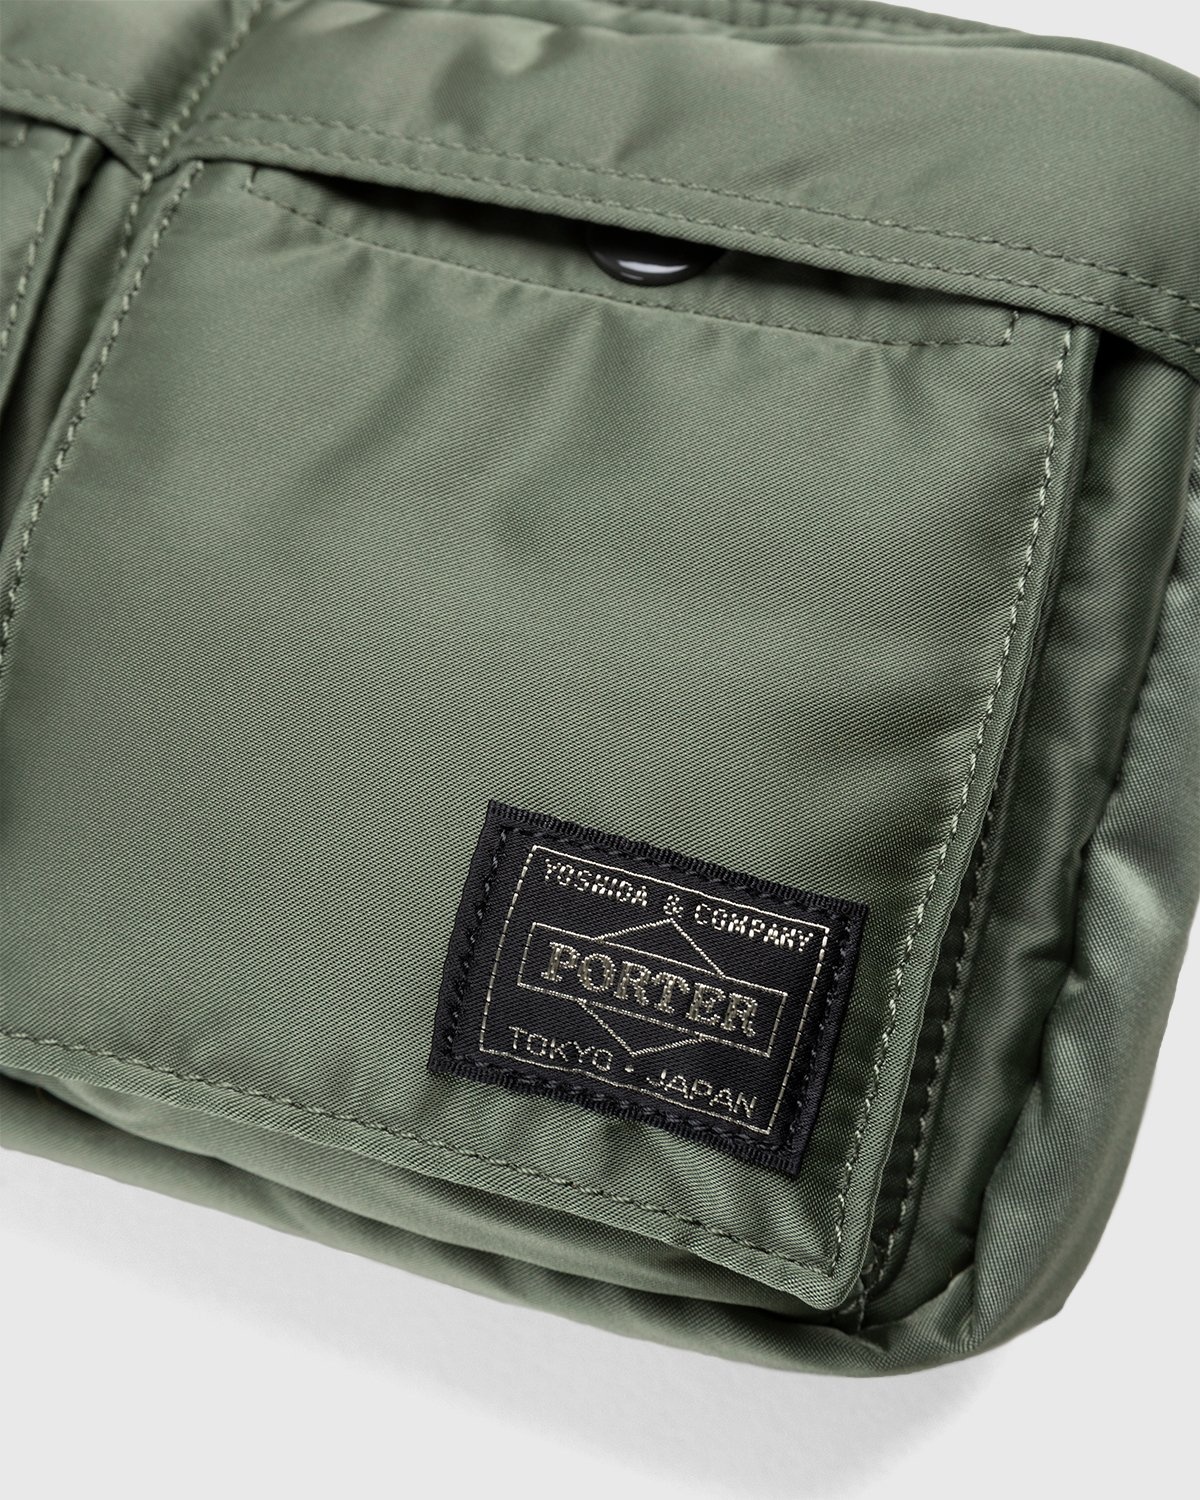 Porter-Yoshida & Co. – Tanker Shoulder Bag Sage Green - Bags - Green - Image 6